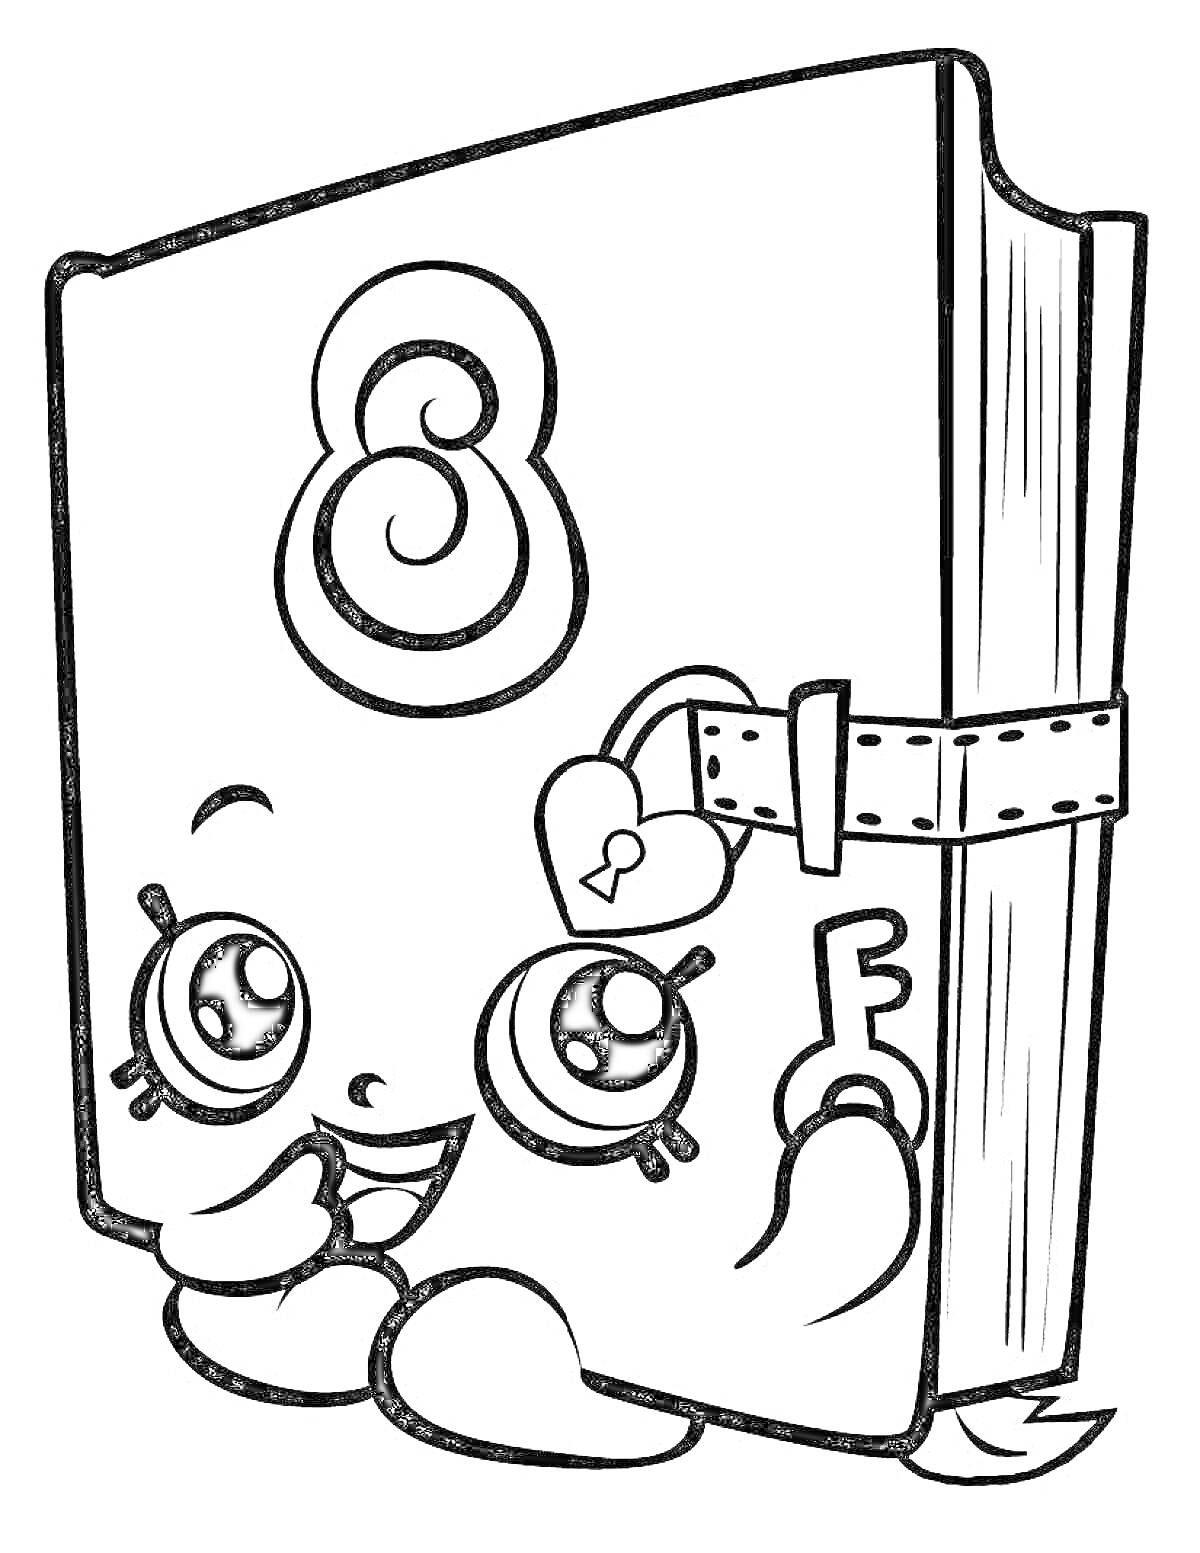 Раскраска Дневник с глазками и ключиком в руках, цифра 8 на обложке, ремешок с замочком в виде сердечка